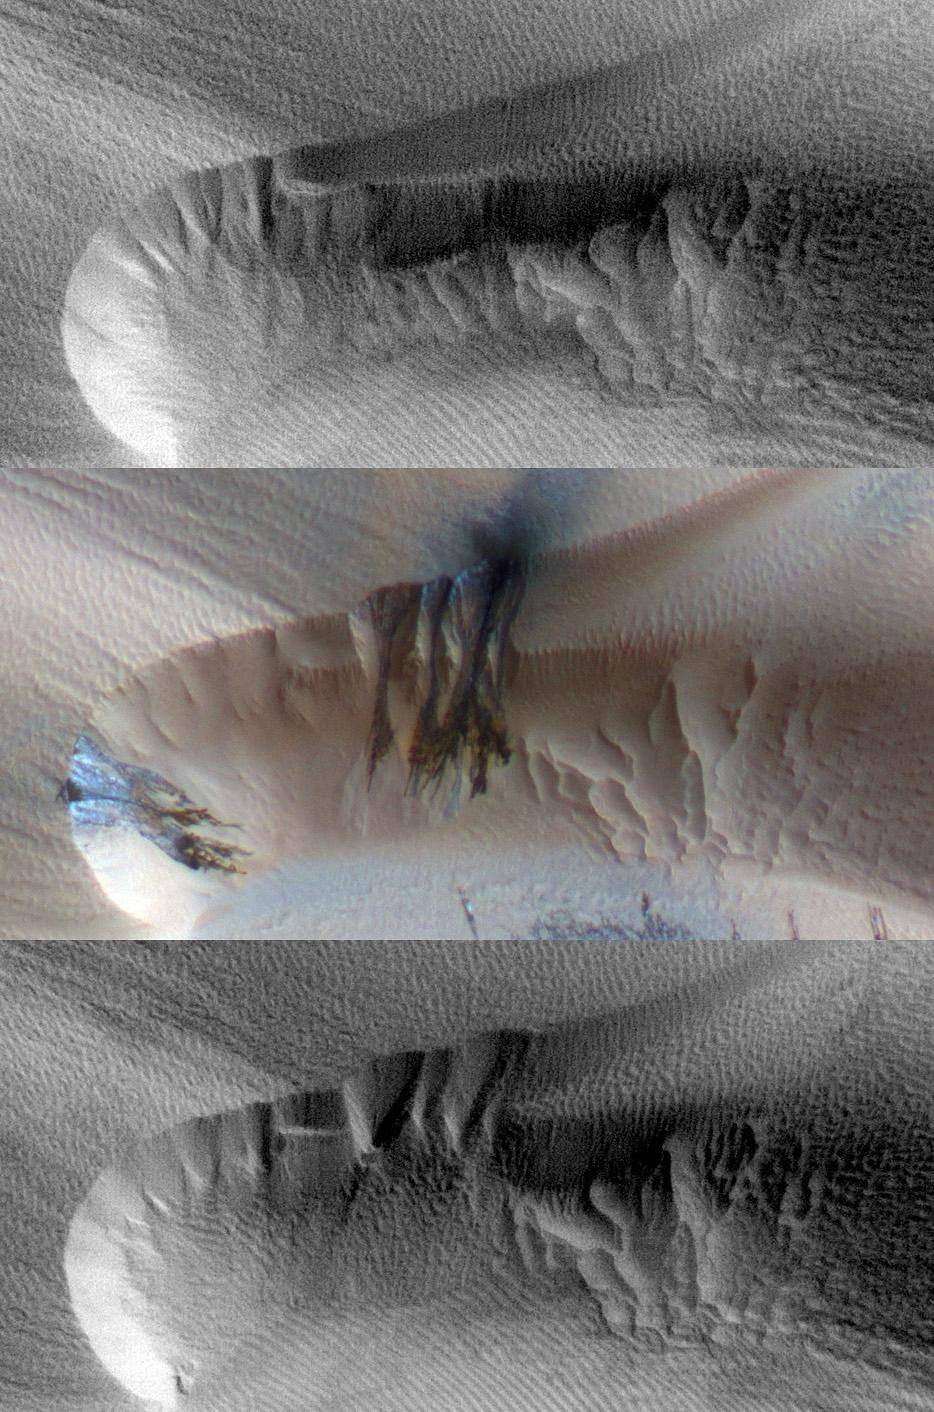 Seasonal Changes in Northern Mars Dune Field